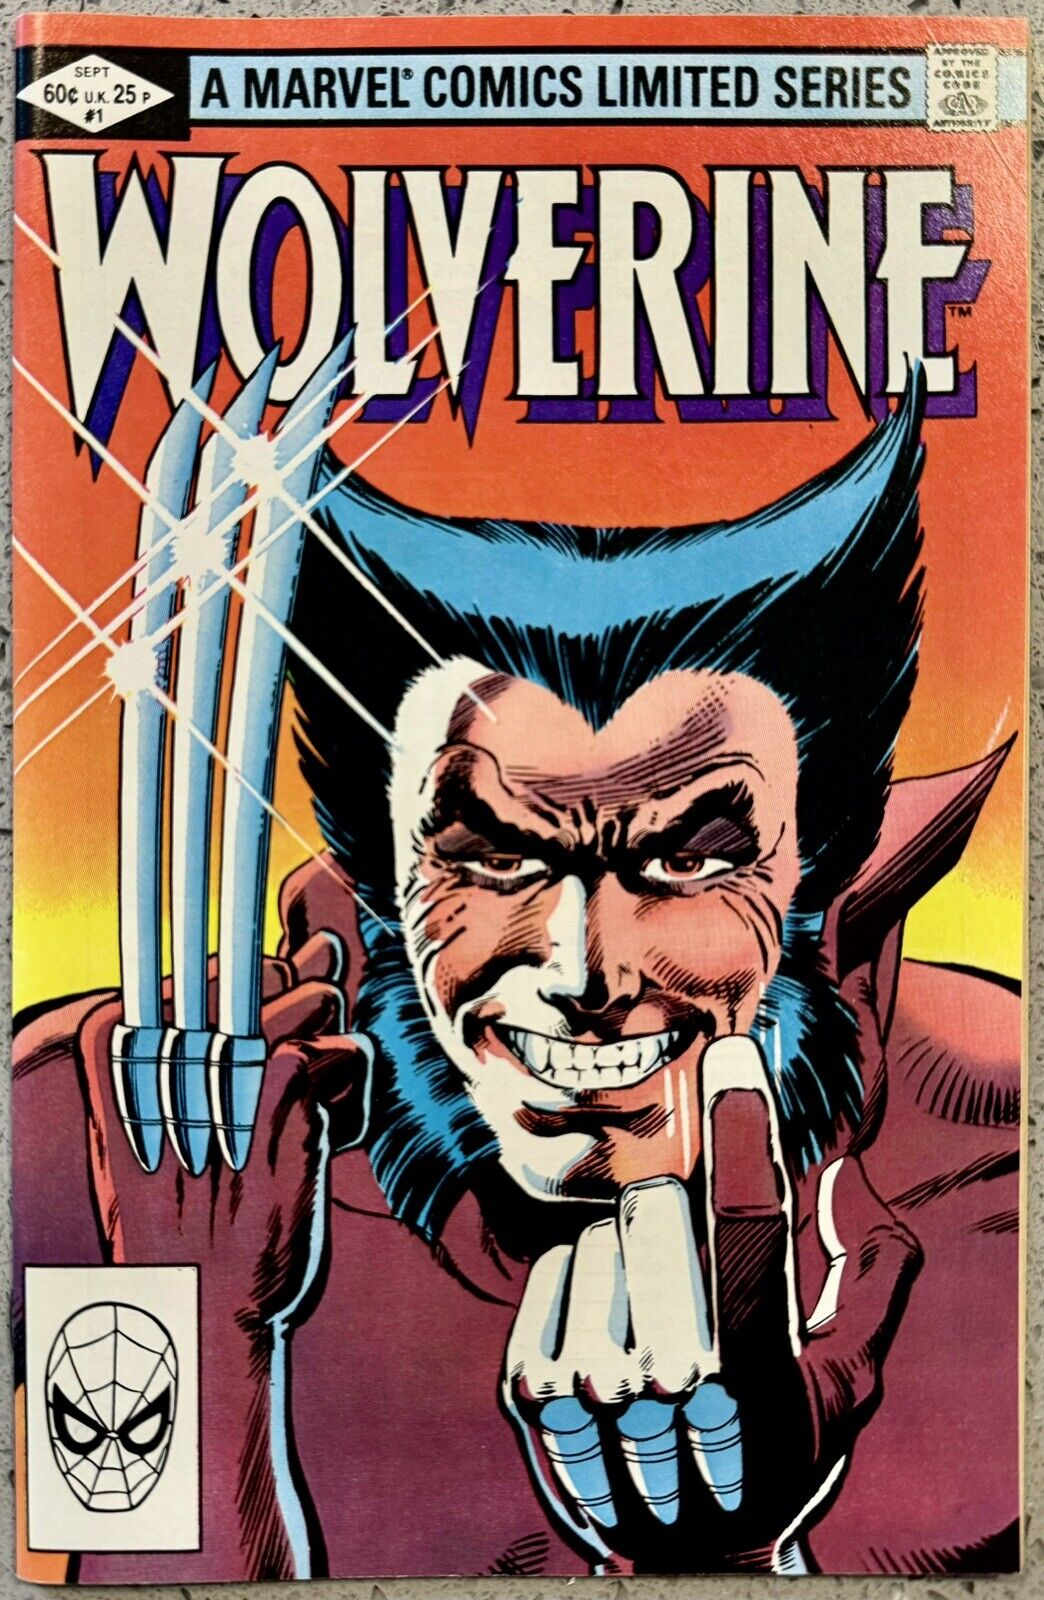 WOLVERINE #1 1982 🔥💎 High Grade 1st Wolverine Solo/Limited Series SNIKT